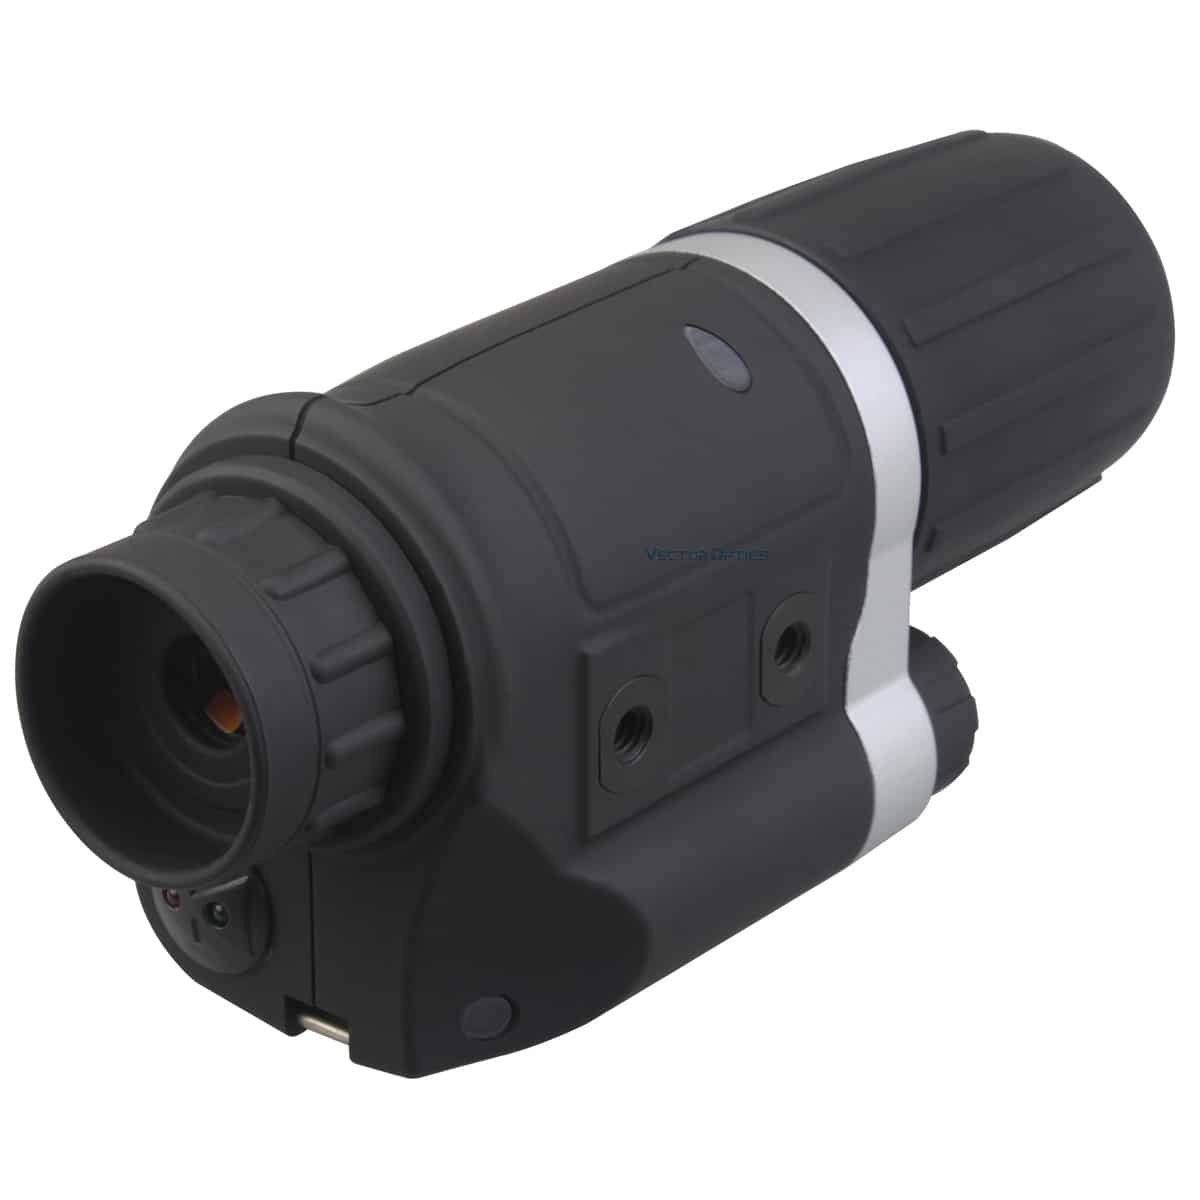 Vector Optics SCNV-01 Nachtsichtgerät Sirius Nachtsichtgerät 3x42 - Vector Optics Shop